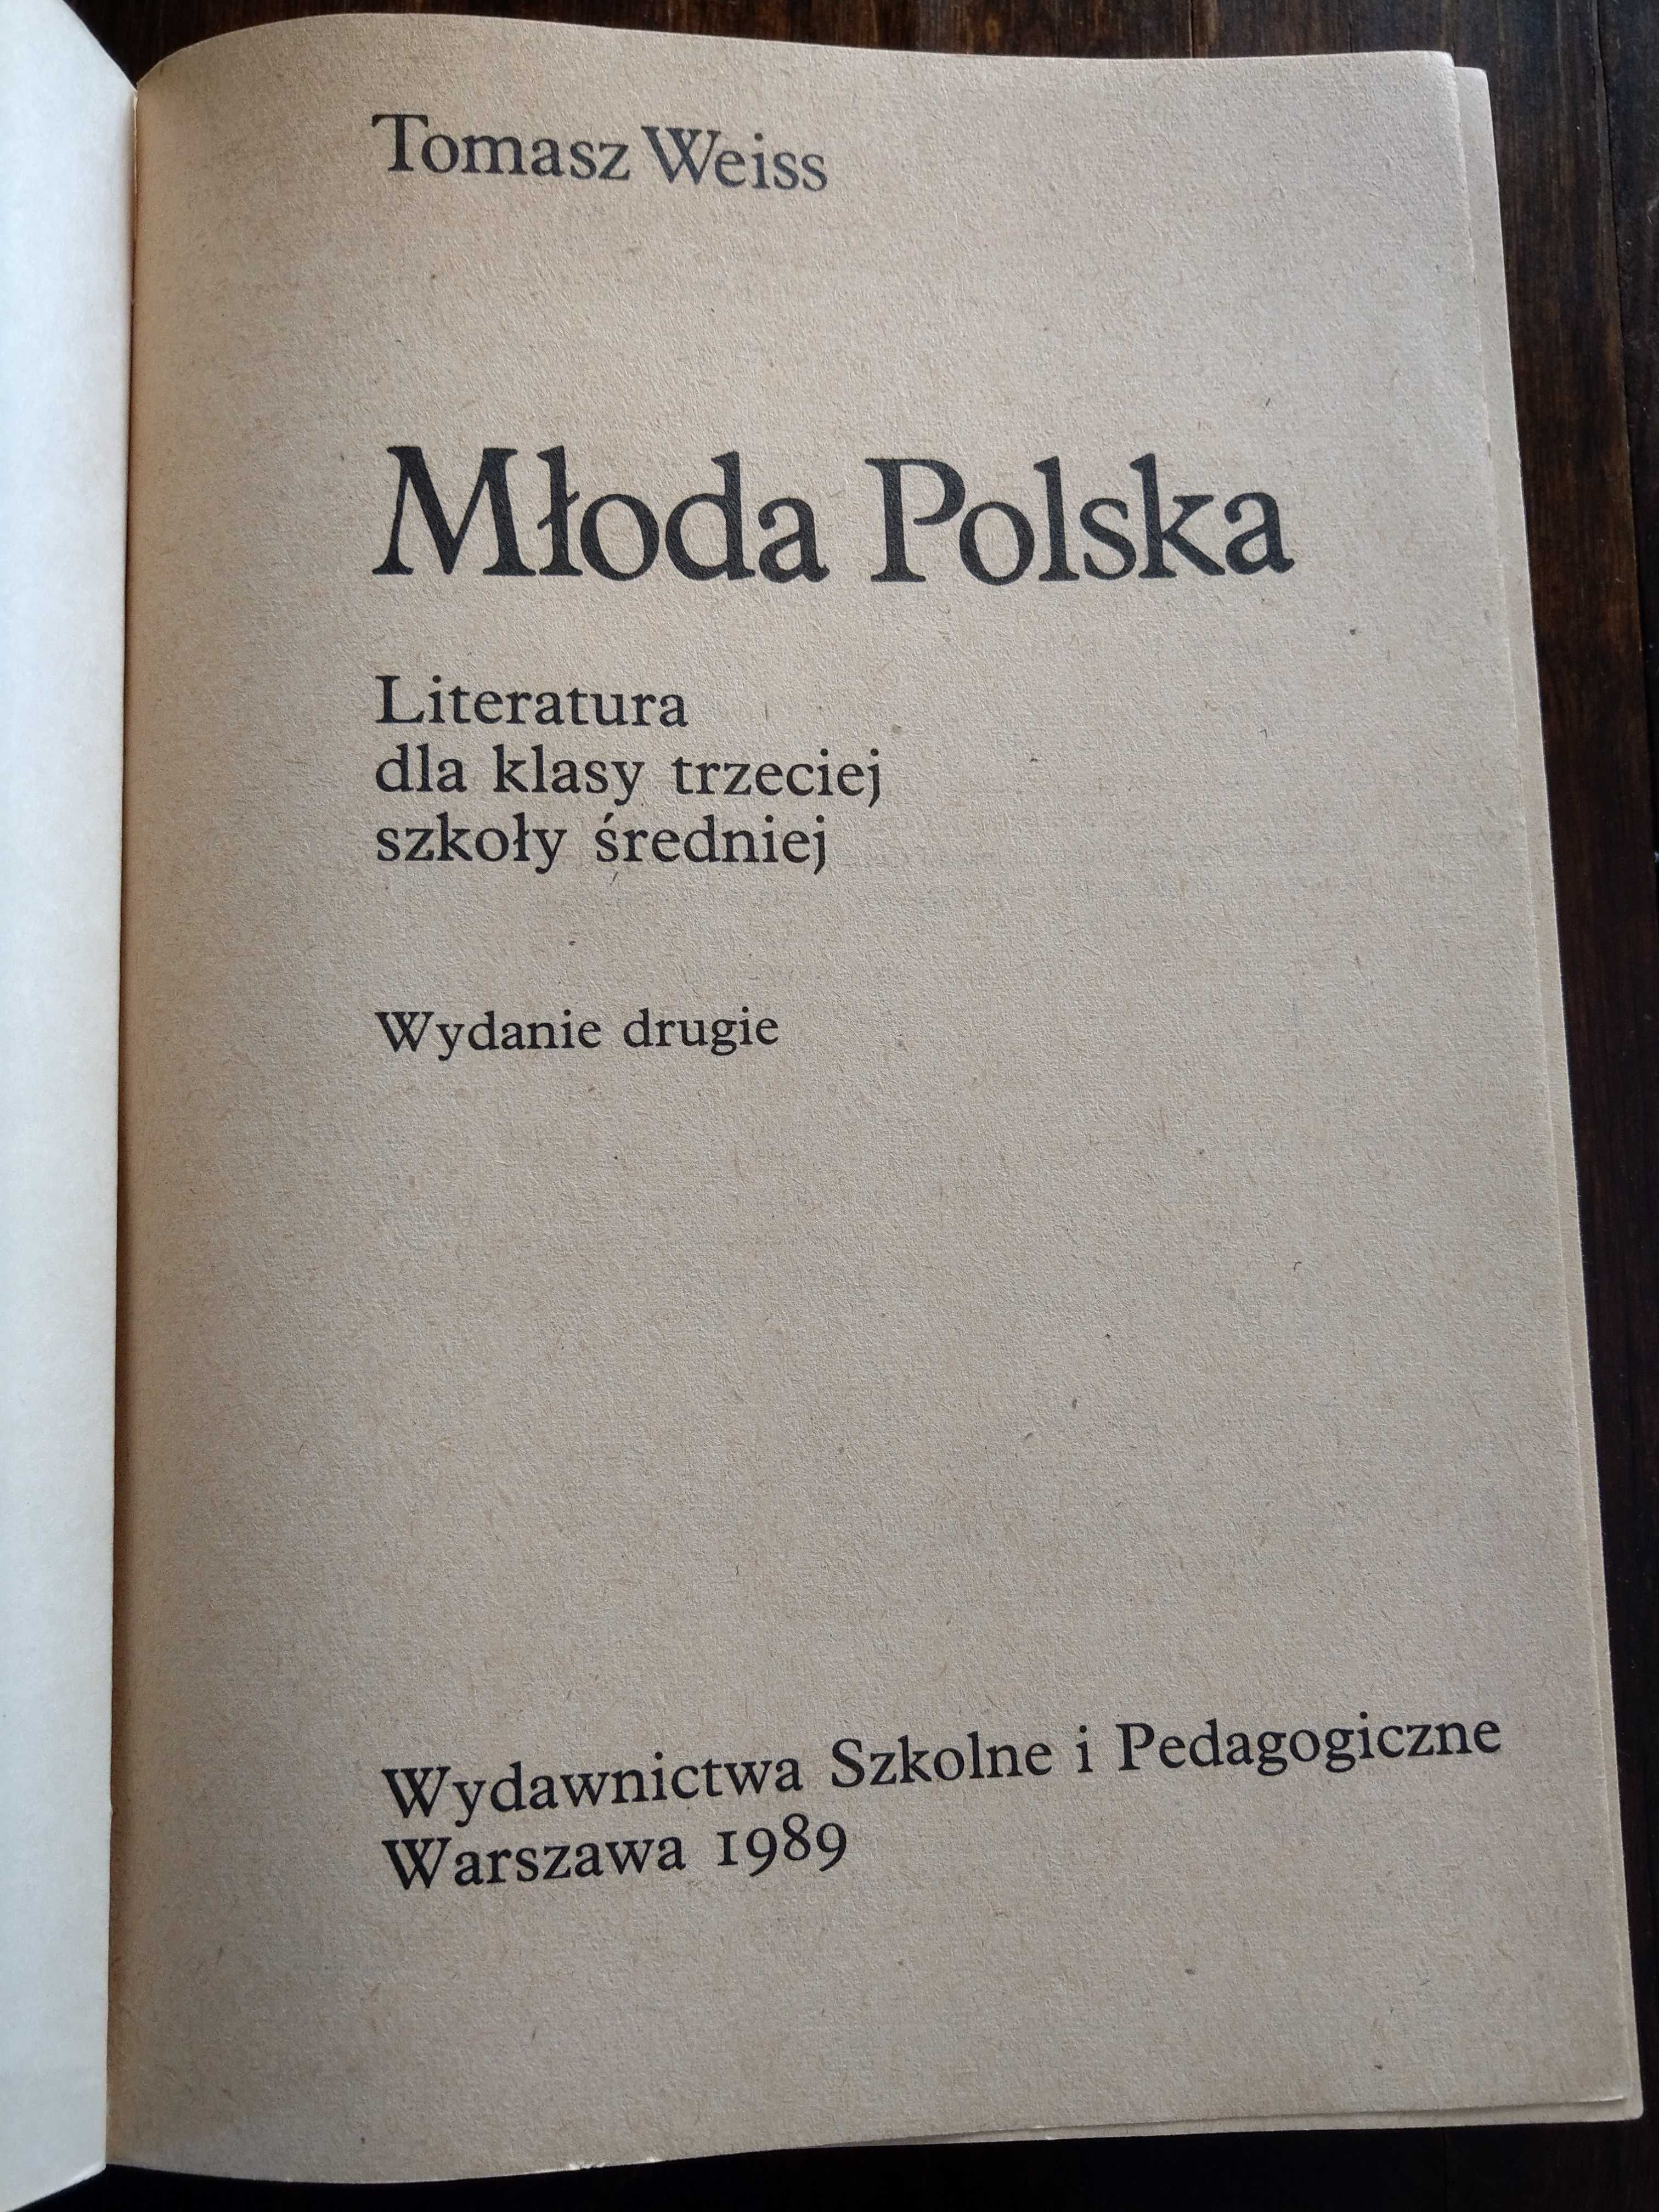 "Młoda Polska" T.Weiss